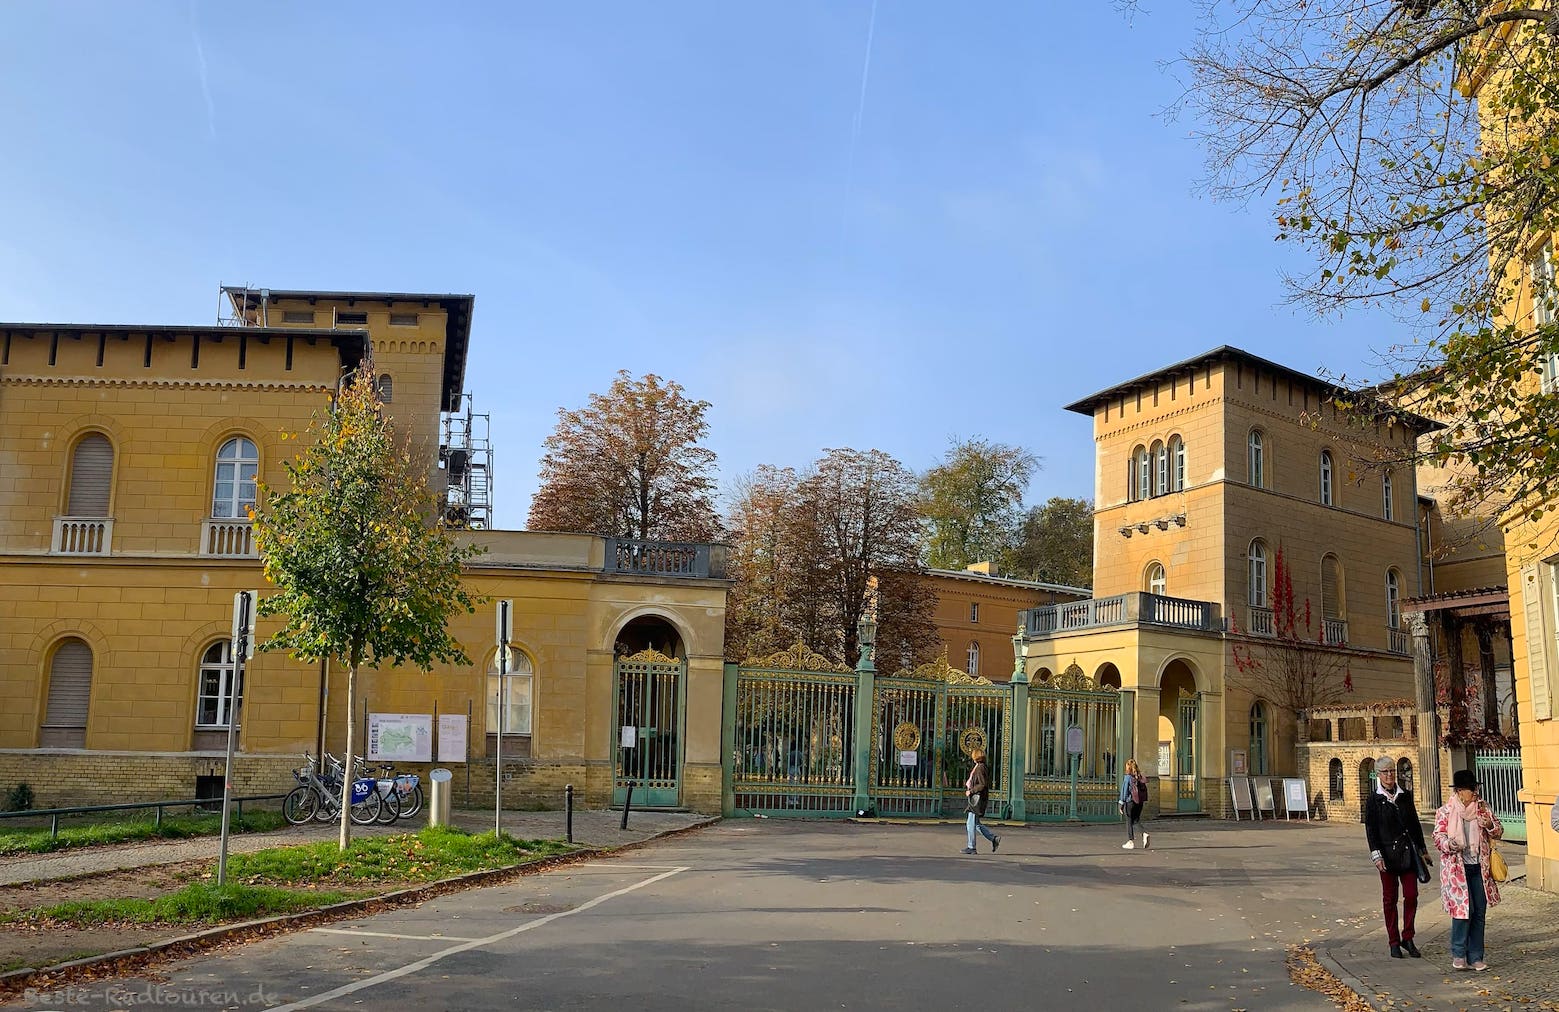 Eingang bzw. Ausgang Grünes Gitter Sanssouci Potsdam, Foto von außen